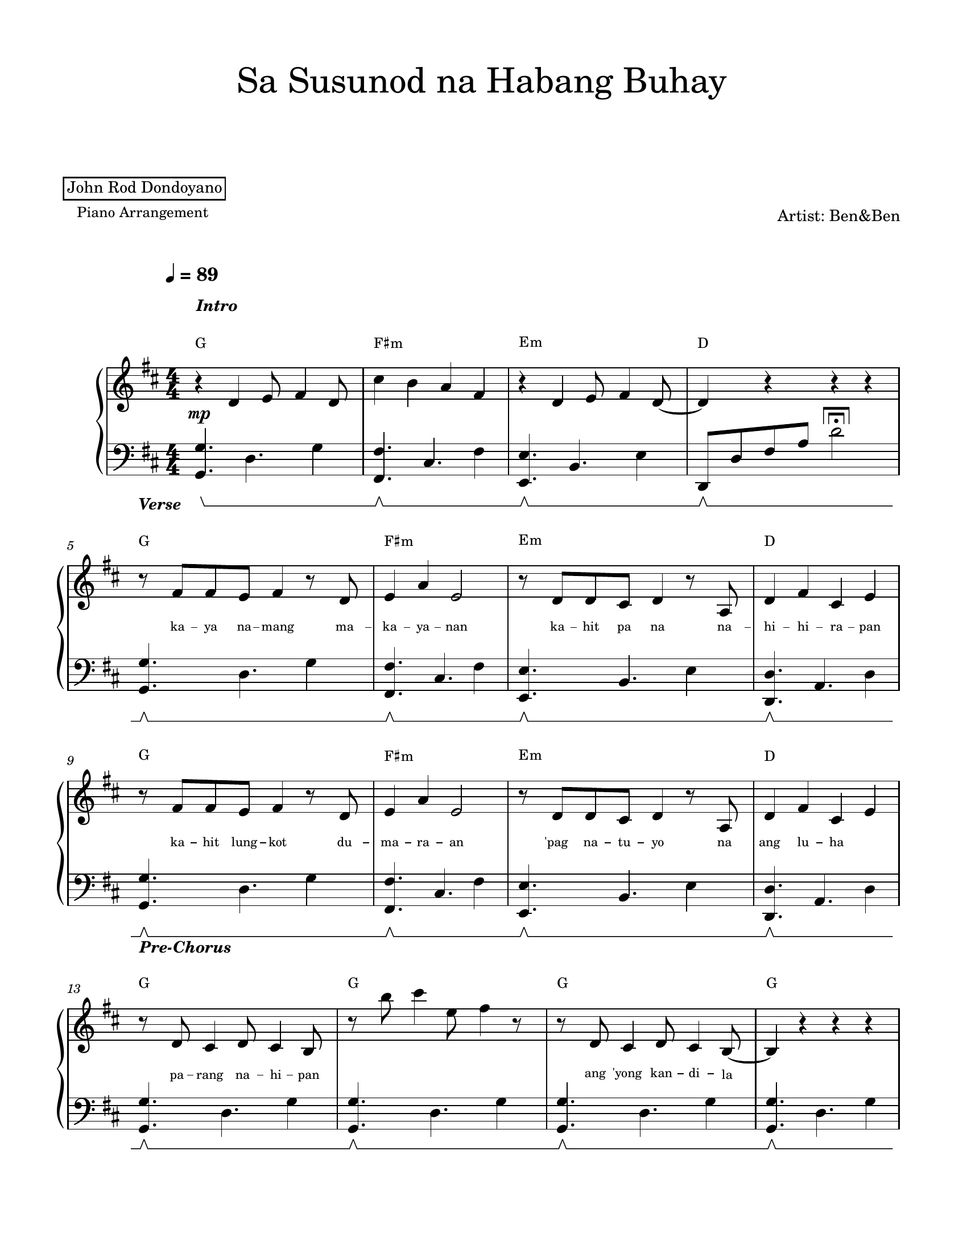 Ben&Ben - Sa Susunod na Habang Buhay (PIANO SHEET) by John Rod Dondoyano